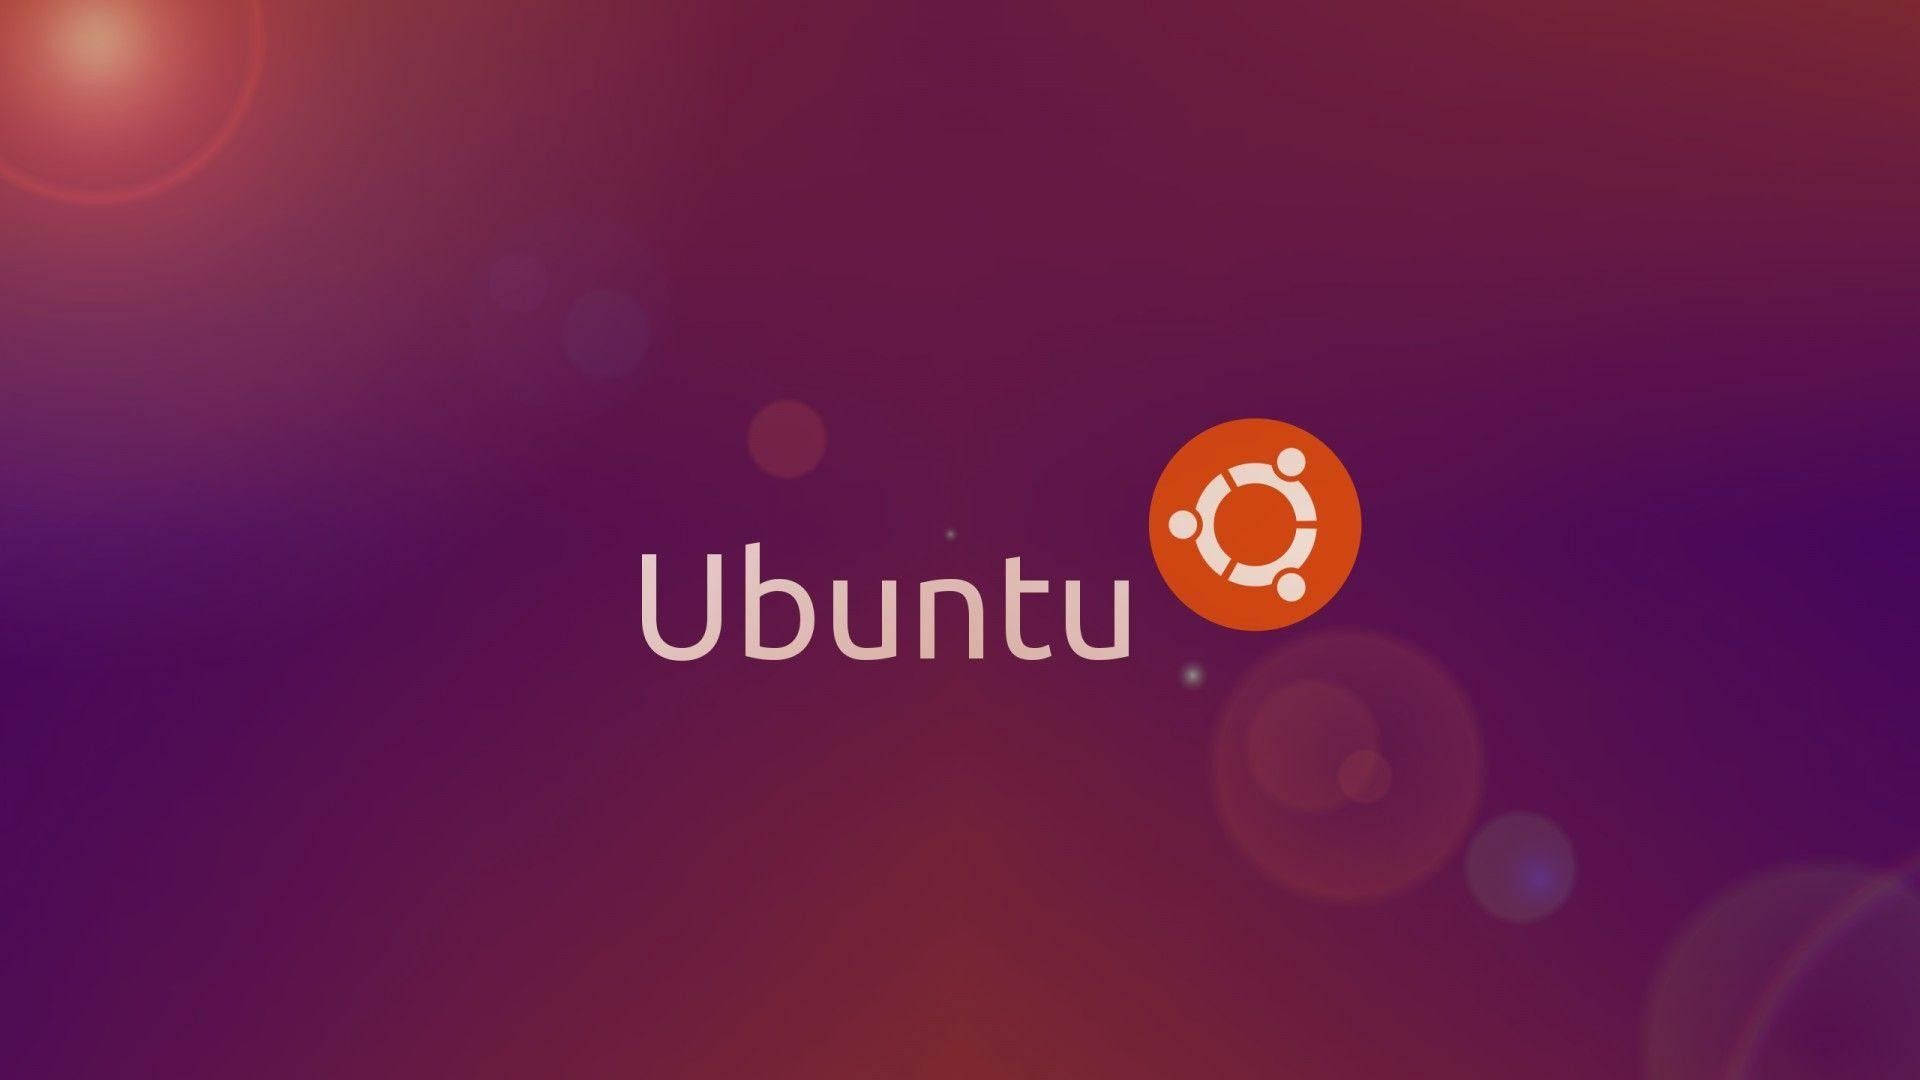 Ubuntu Wallpaper Images